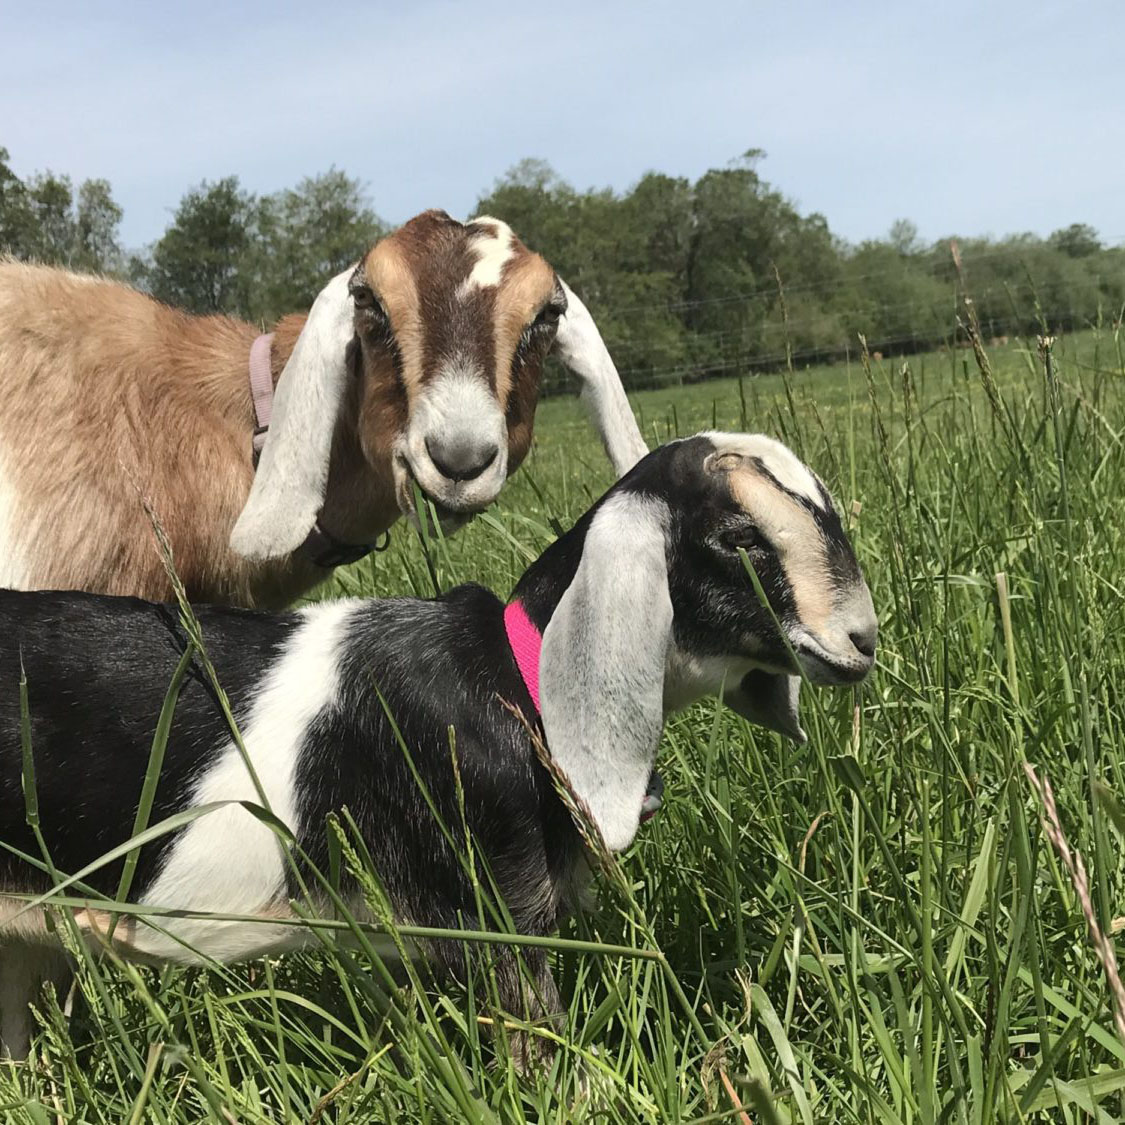 The Bibby's Goats